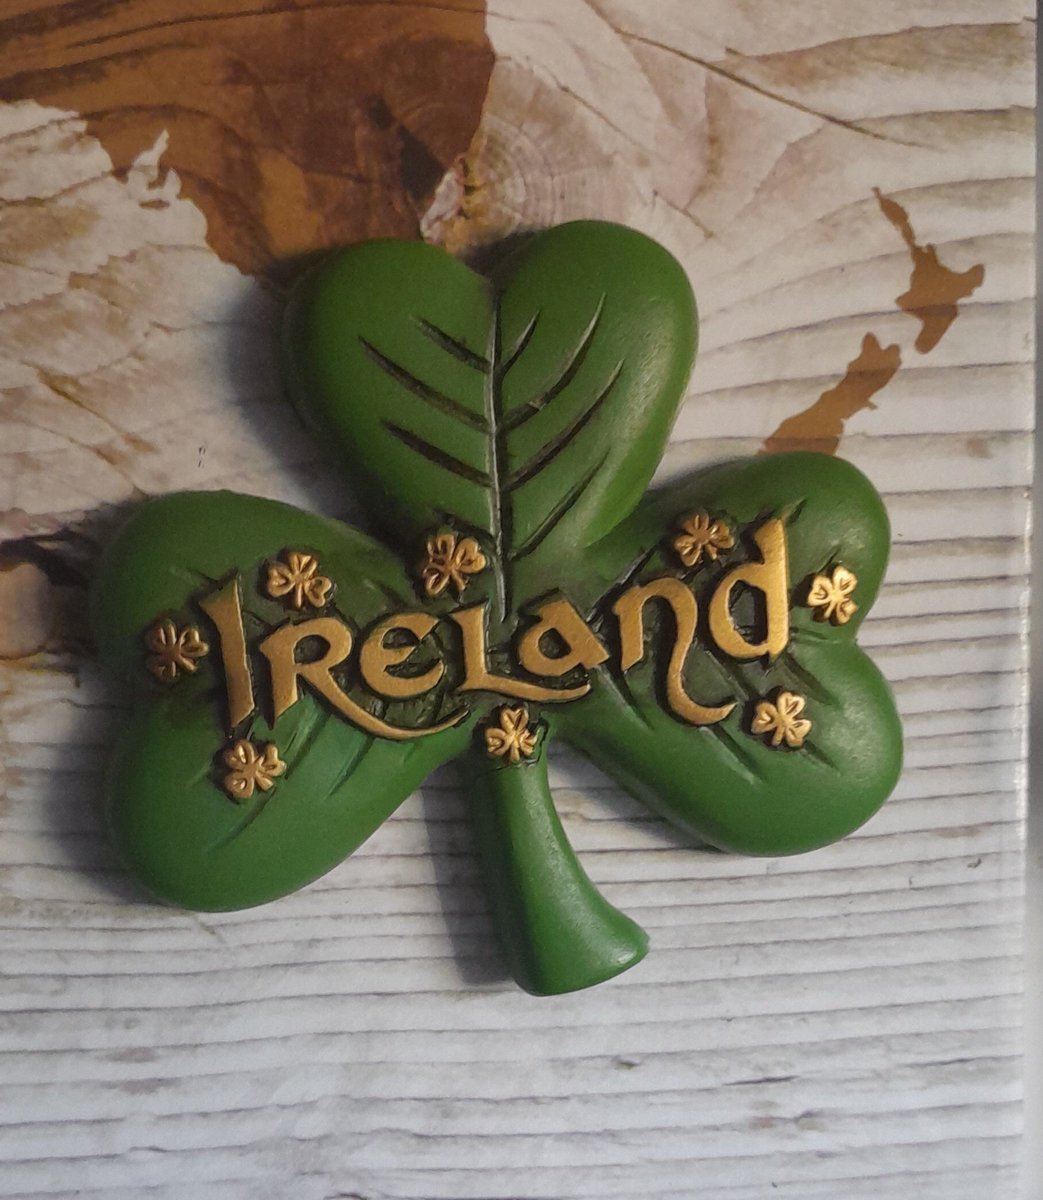 Little souvenir I got from my trip to Dublin
@MarxistPaul